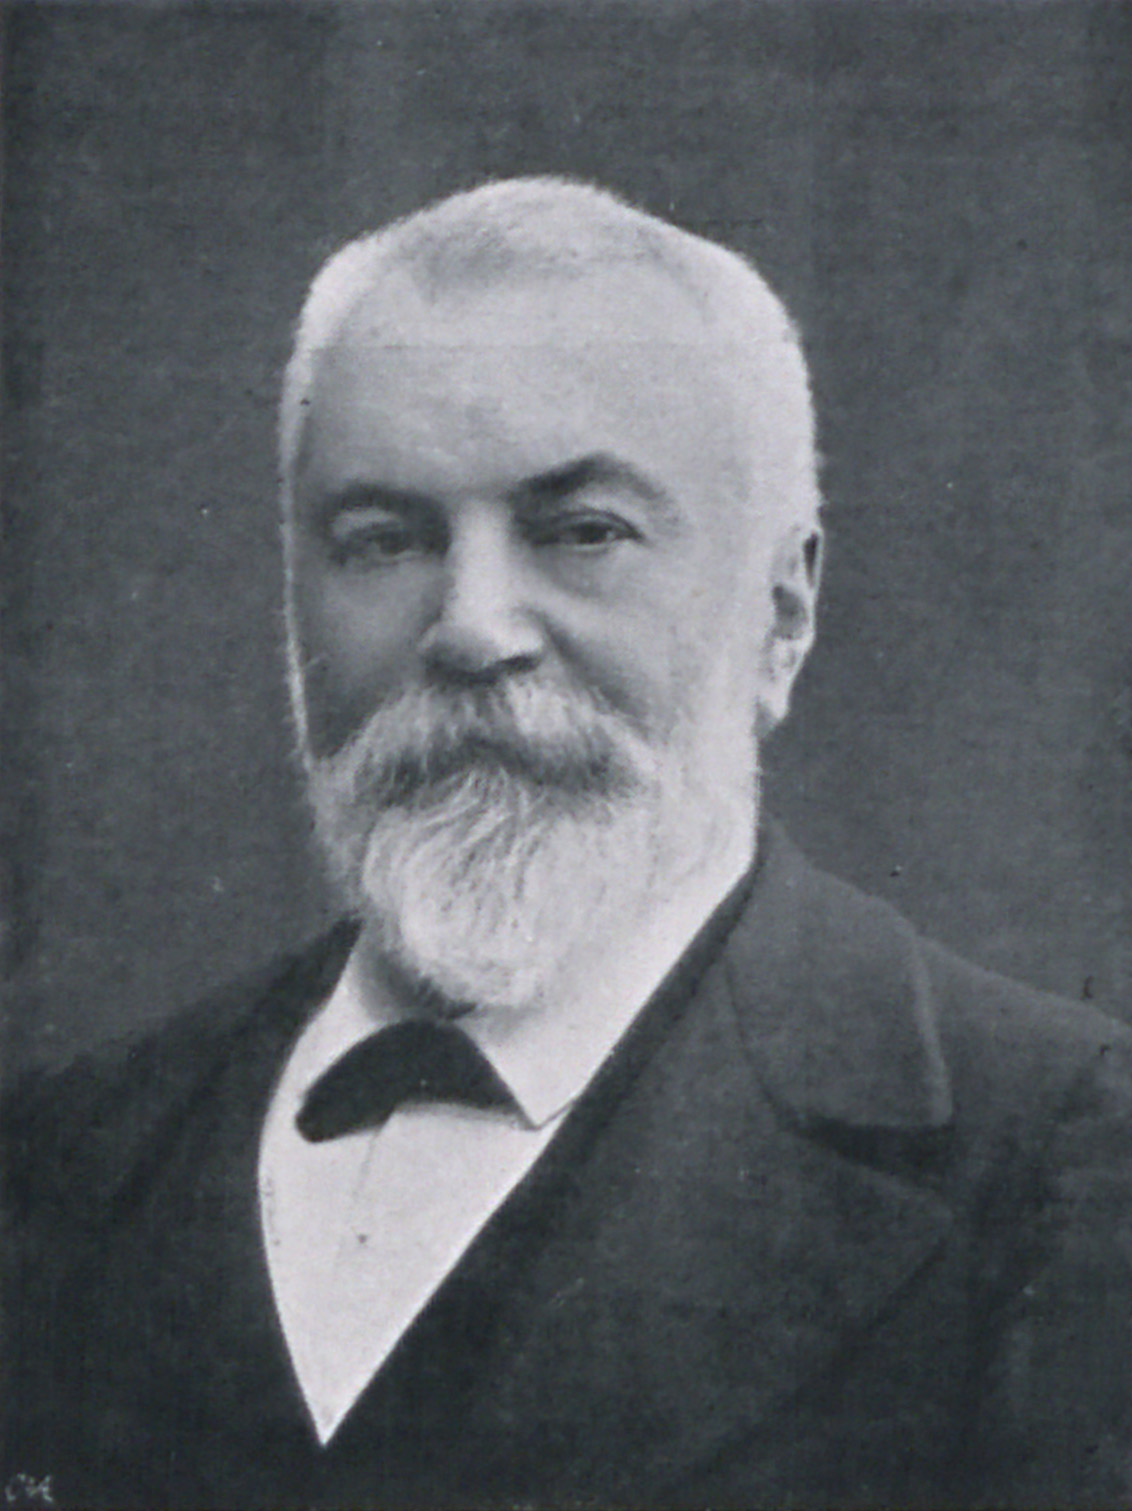 Portrait d'Yves Guyot in Les défenseurs de la justice : affaire Dreyfus, 1899